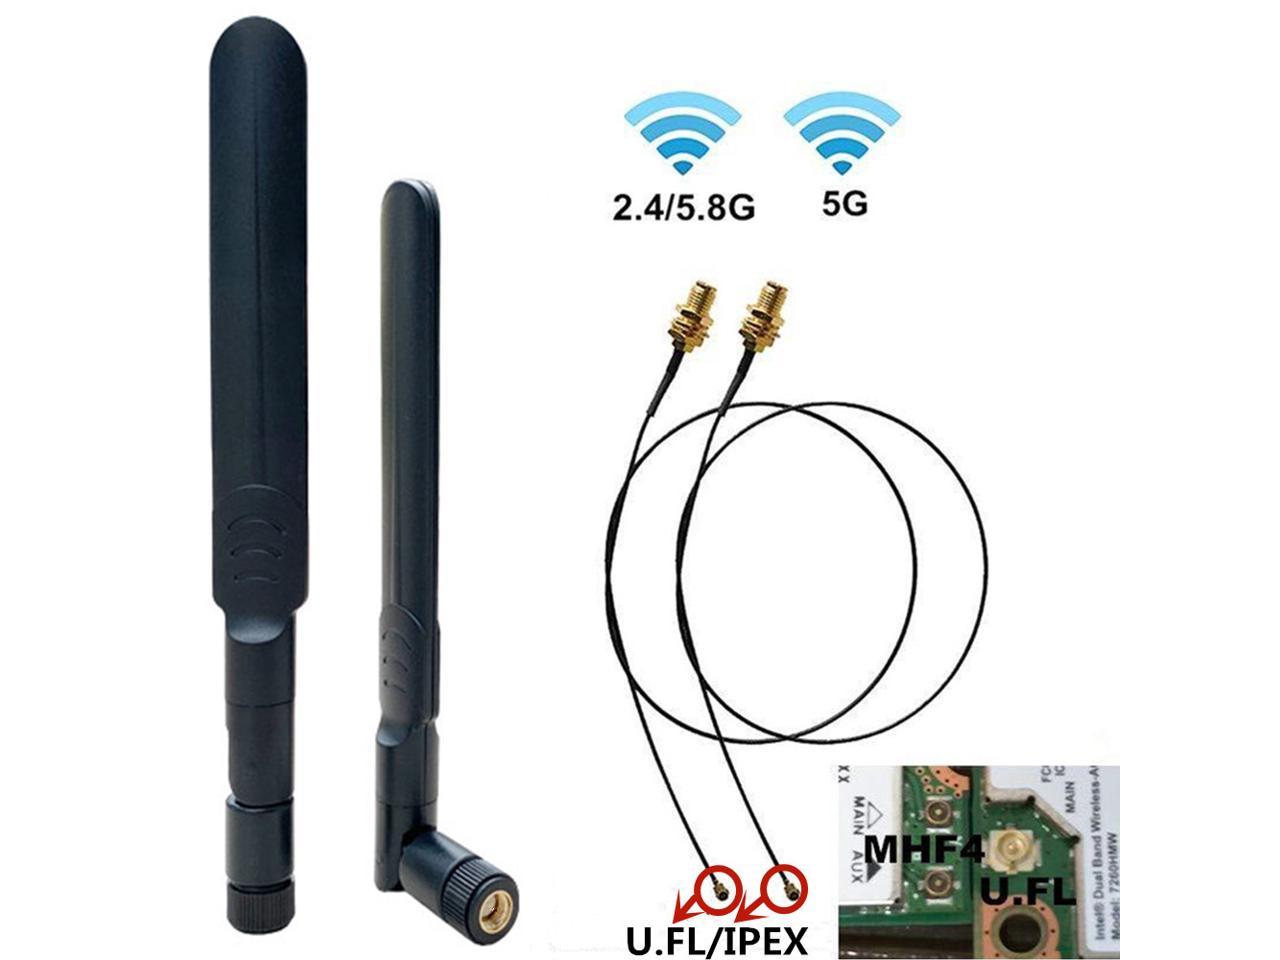 Bingfu WLAN Antenne Dualband 2,4 GHz 5 GHz 5,8 GHz 3dBi MIMO RP-SMA Stecker Antenne für WLAN-Router Drahtlose Netzwerkkarte USB-Adapter Sicherheit IP-Kamera Videoüberwachung Monitor 